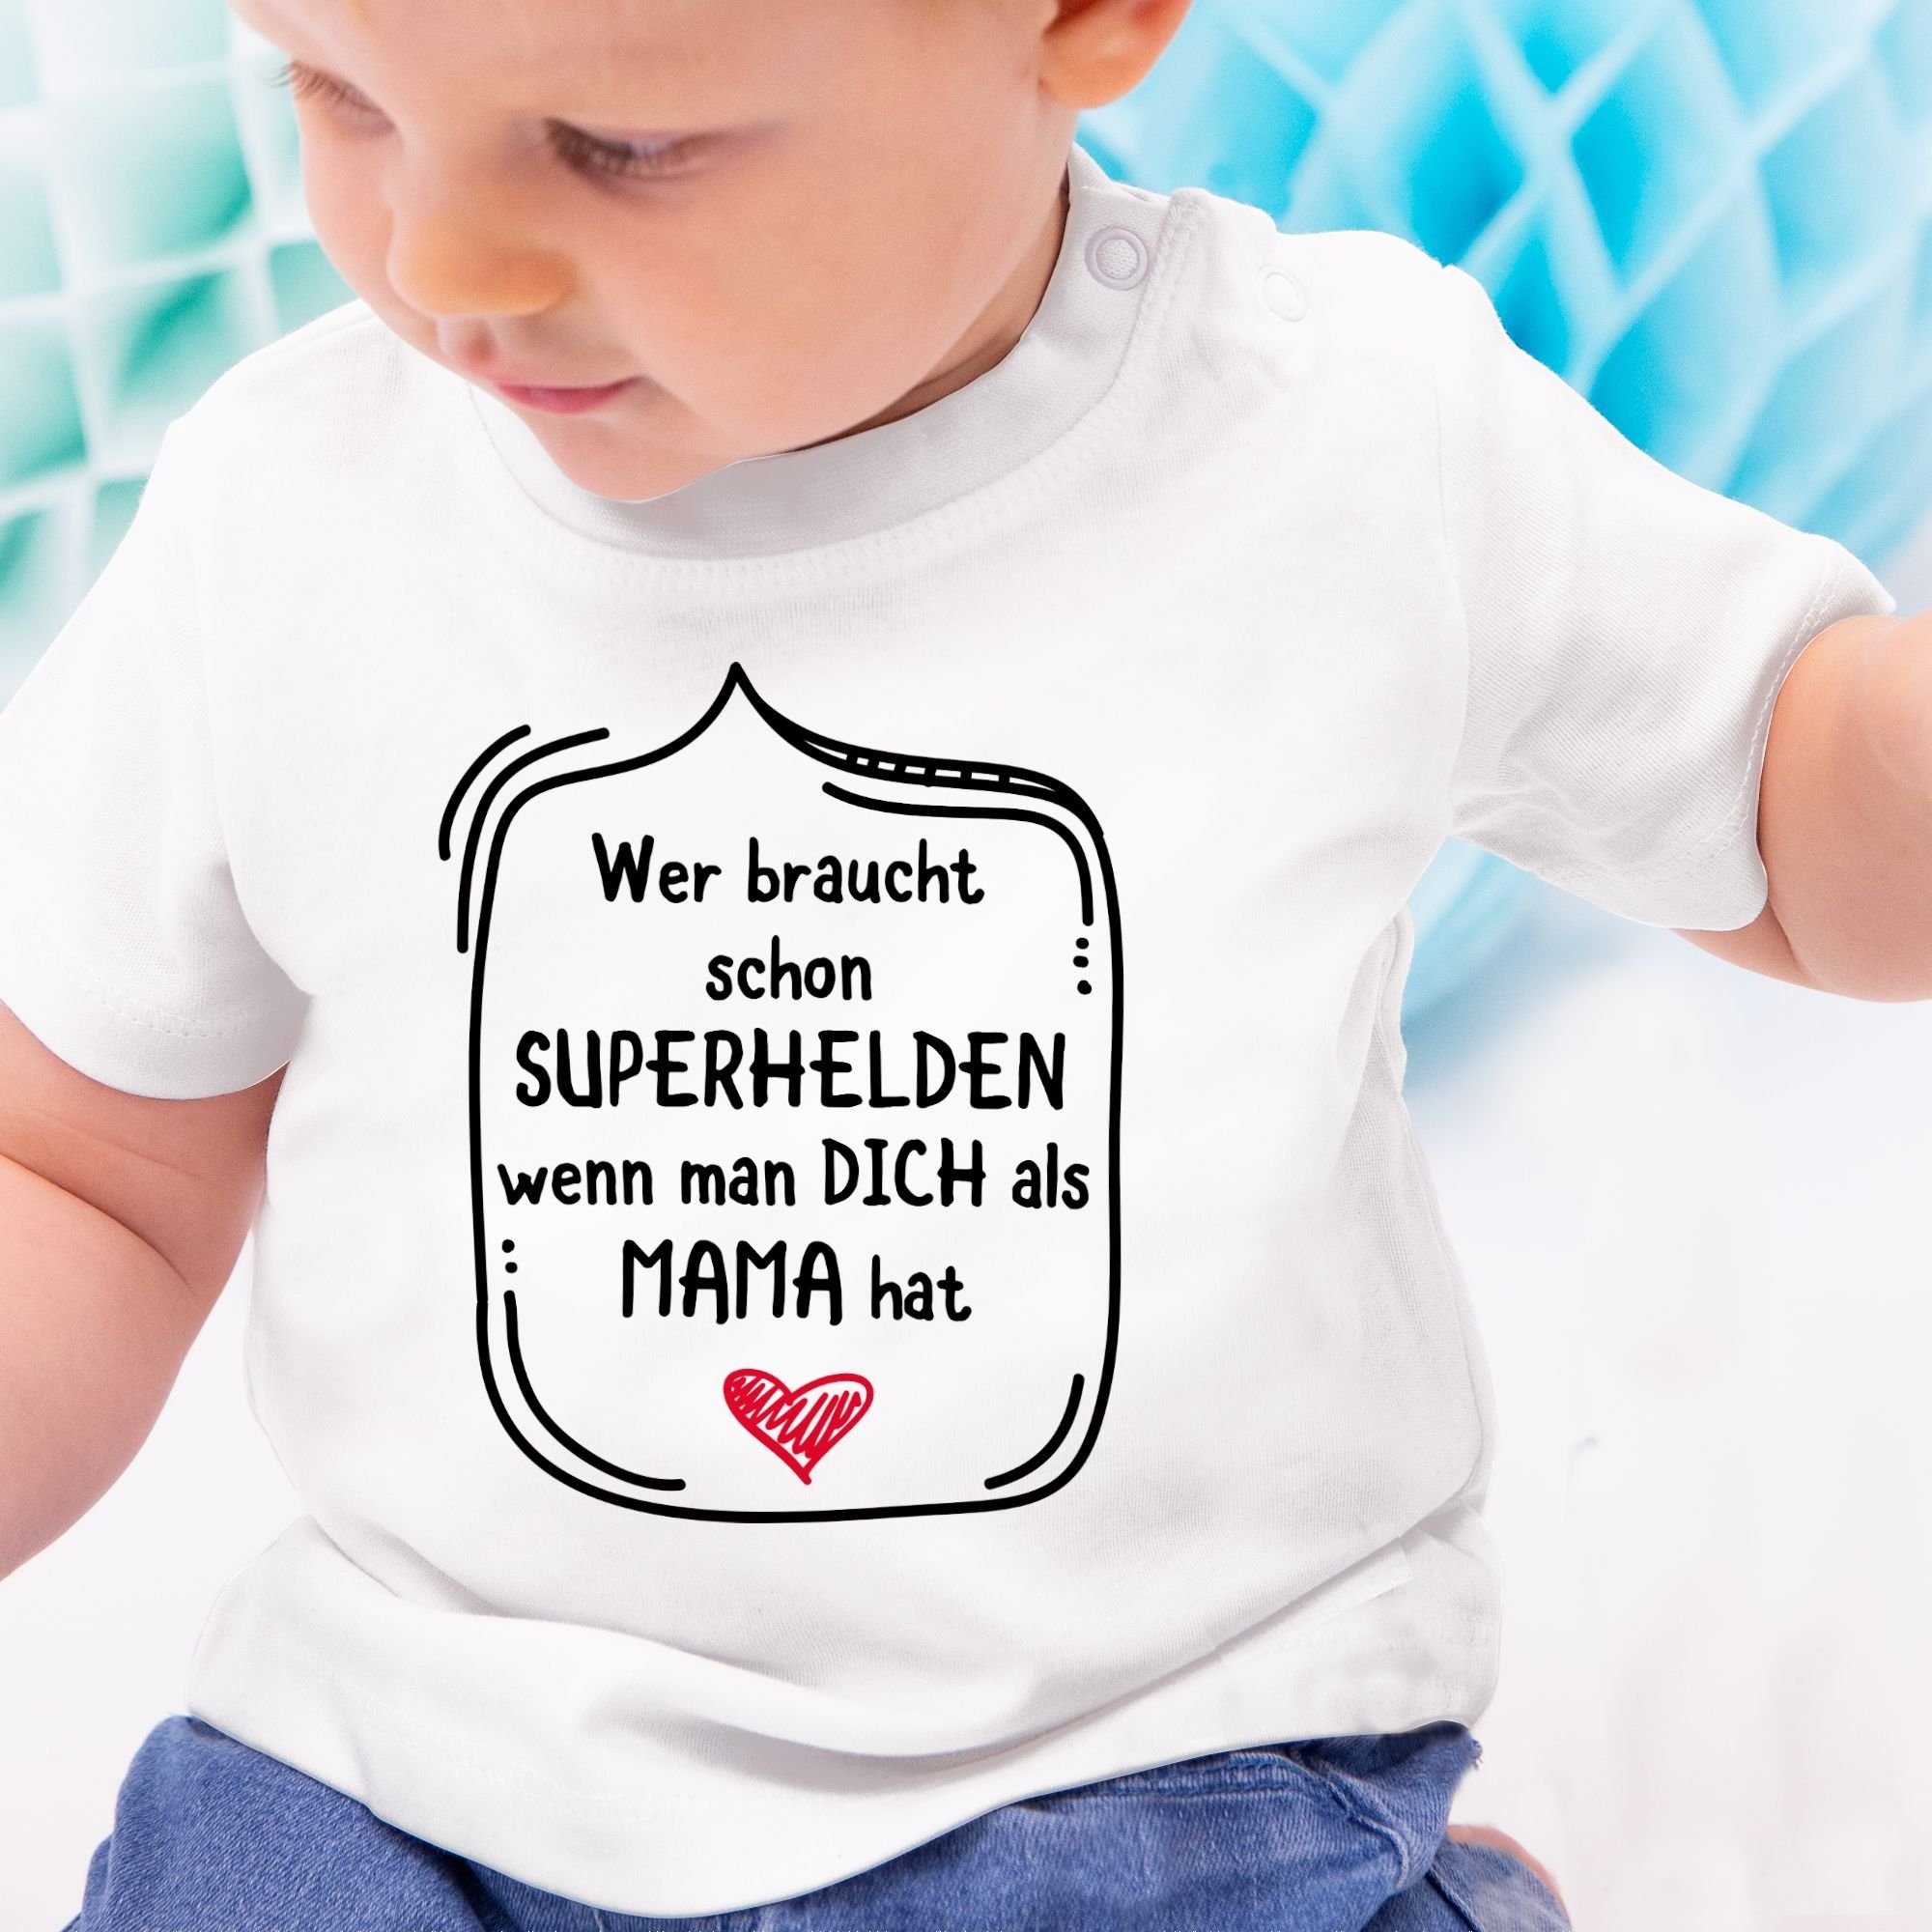 Shirtracer T-Shirt Wer 1 als Superhelden hat schon dich wenn Mama Muttertagsgeschenk man Weiß braucht